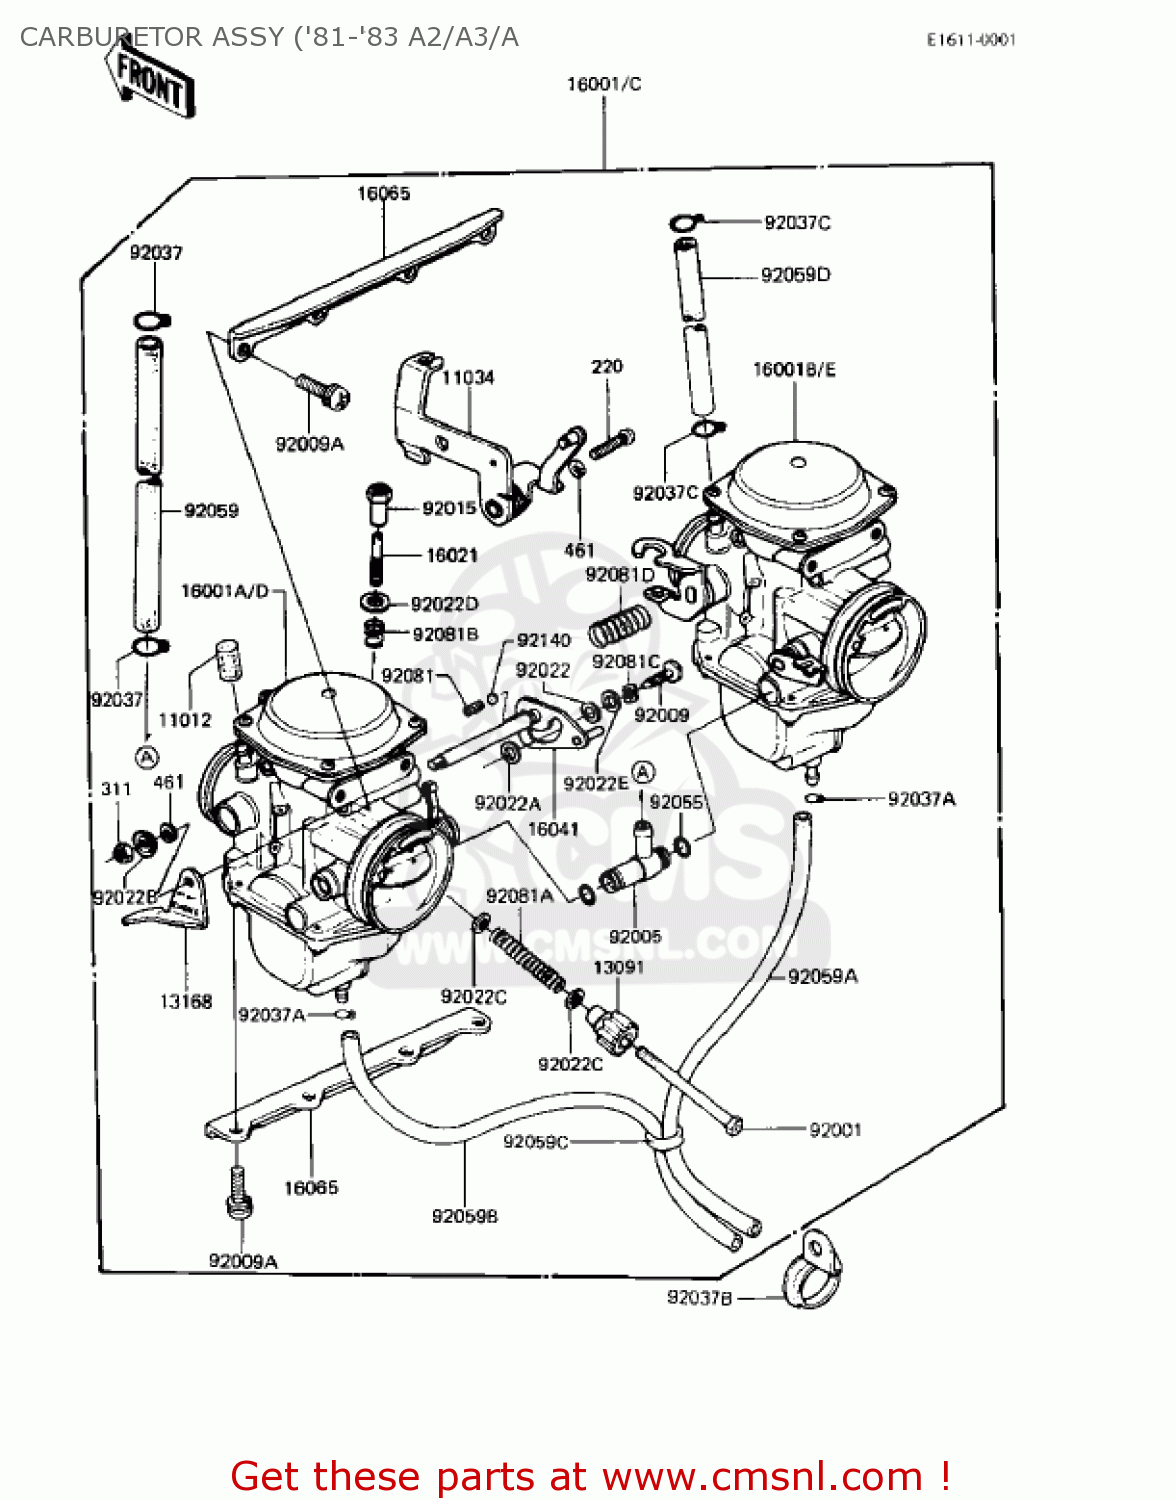 2000 kawasaki prairie 300 carburetor diagram